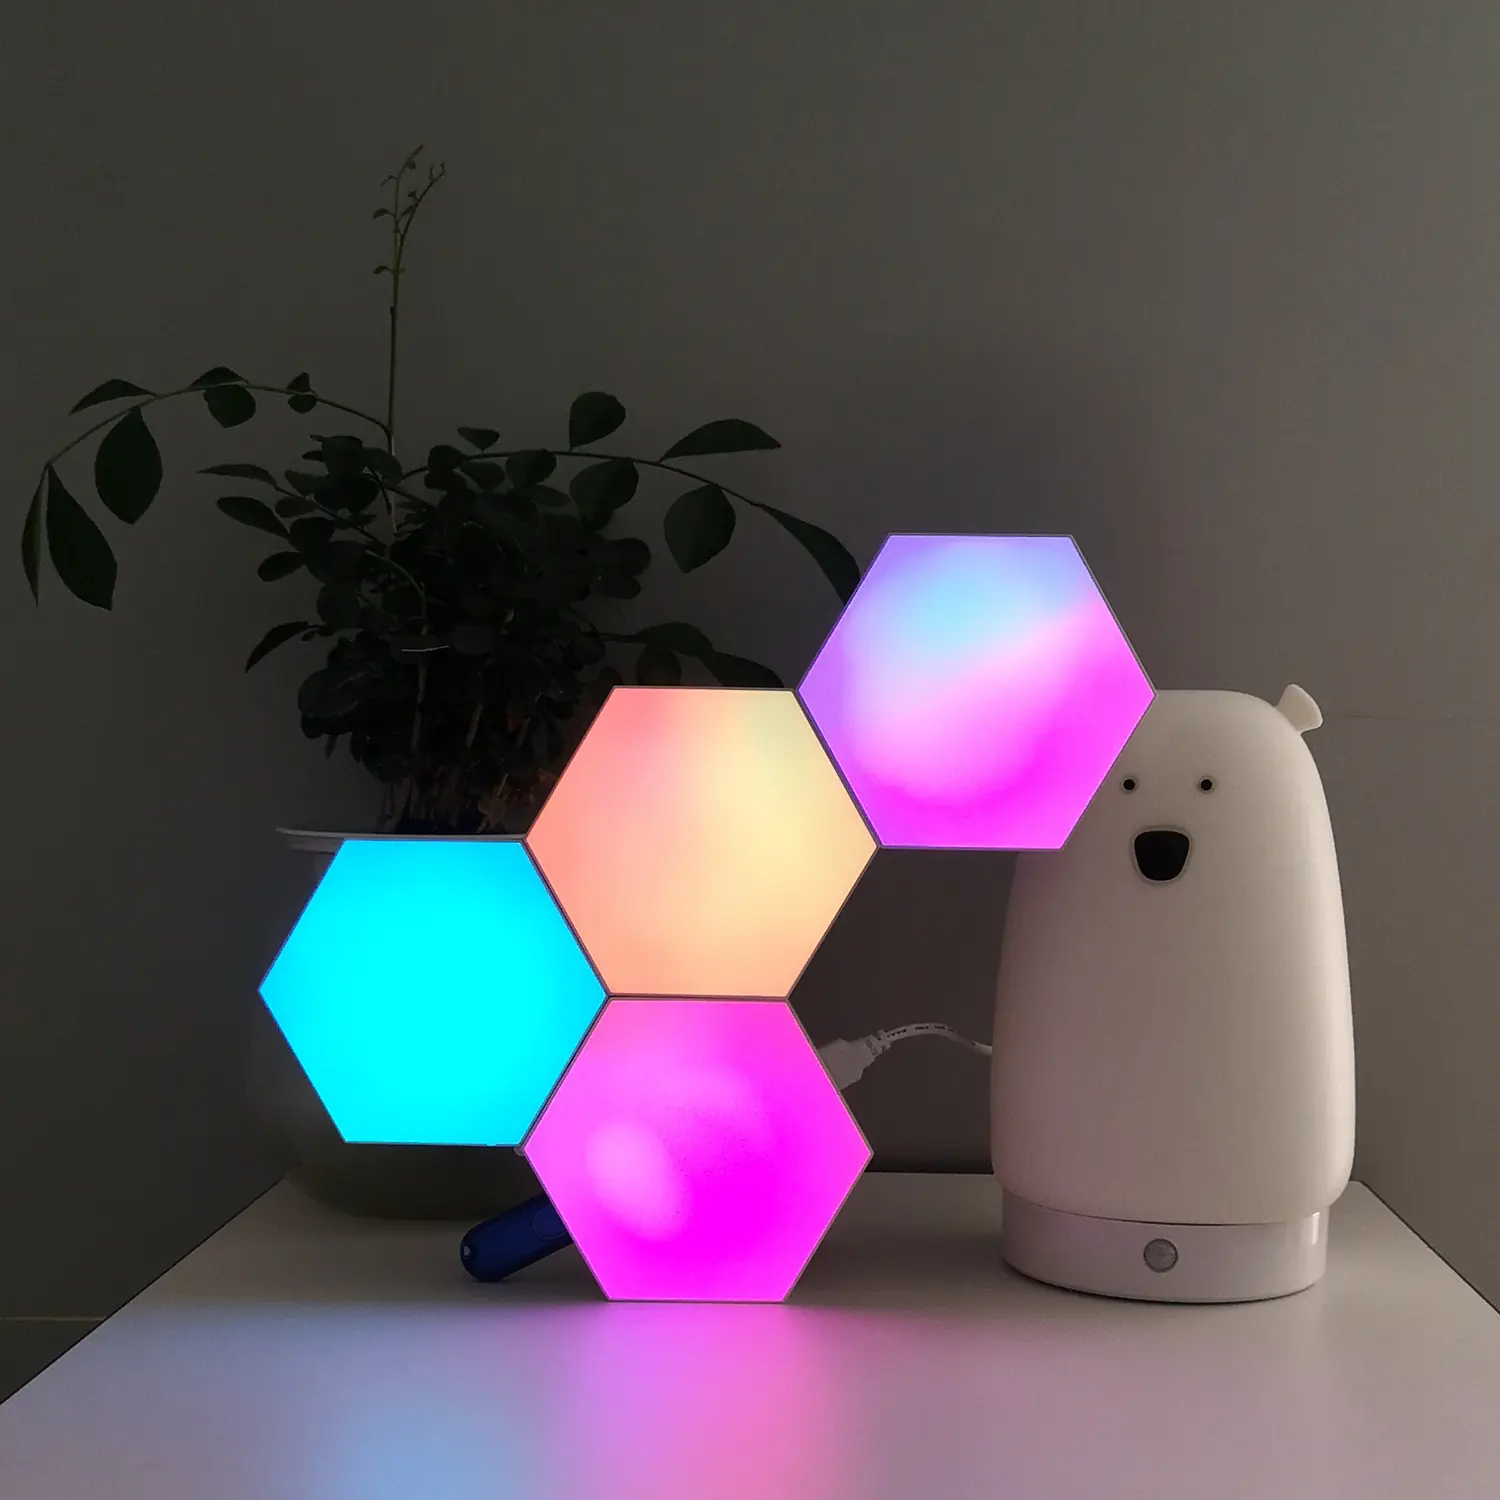 Lampe modulaire hexagonale synchronisée avec la musique, décoration de noël, téléphone portable, application contrôlée, lumière Led RGB innovante 2020